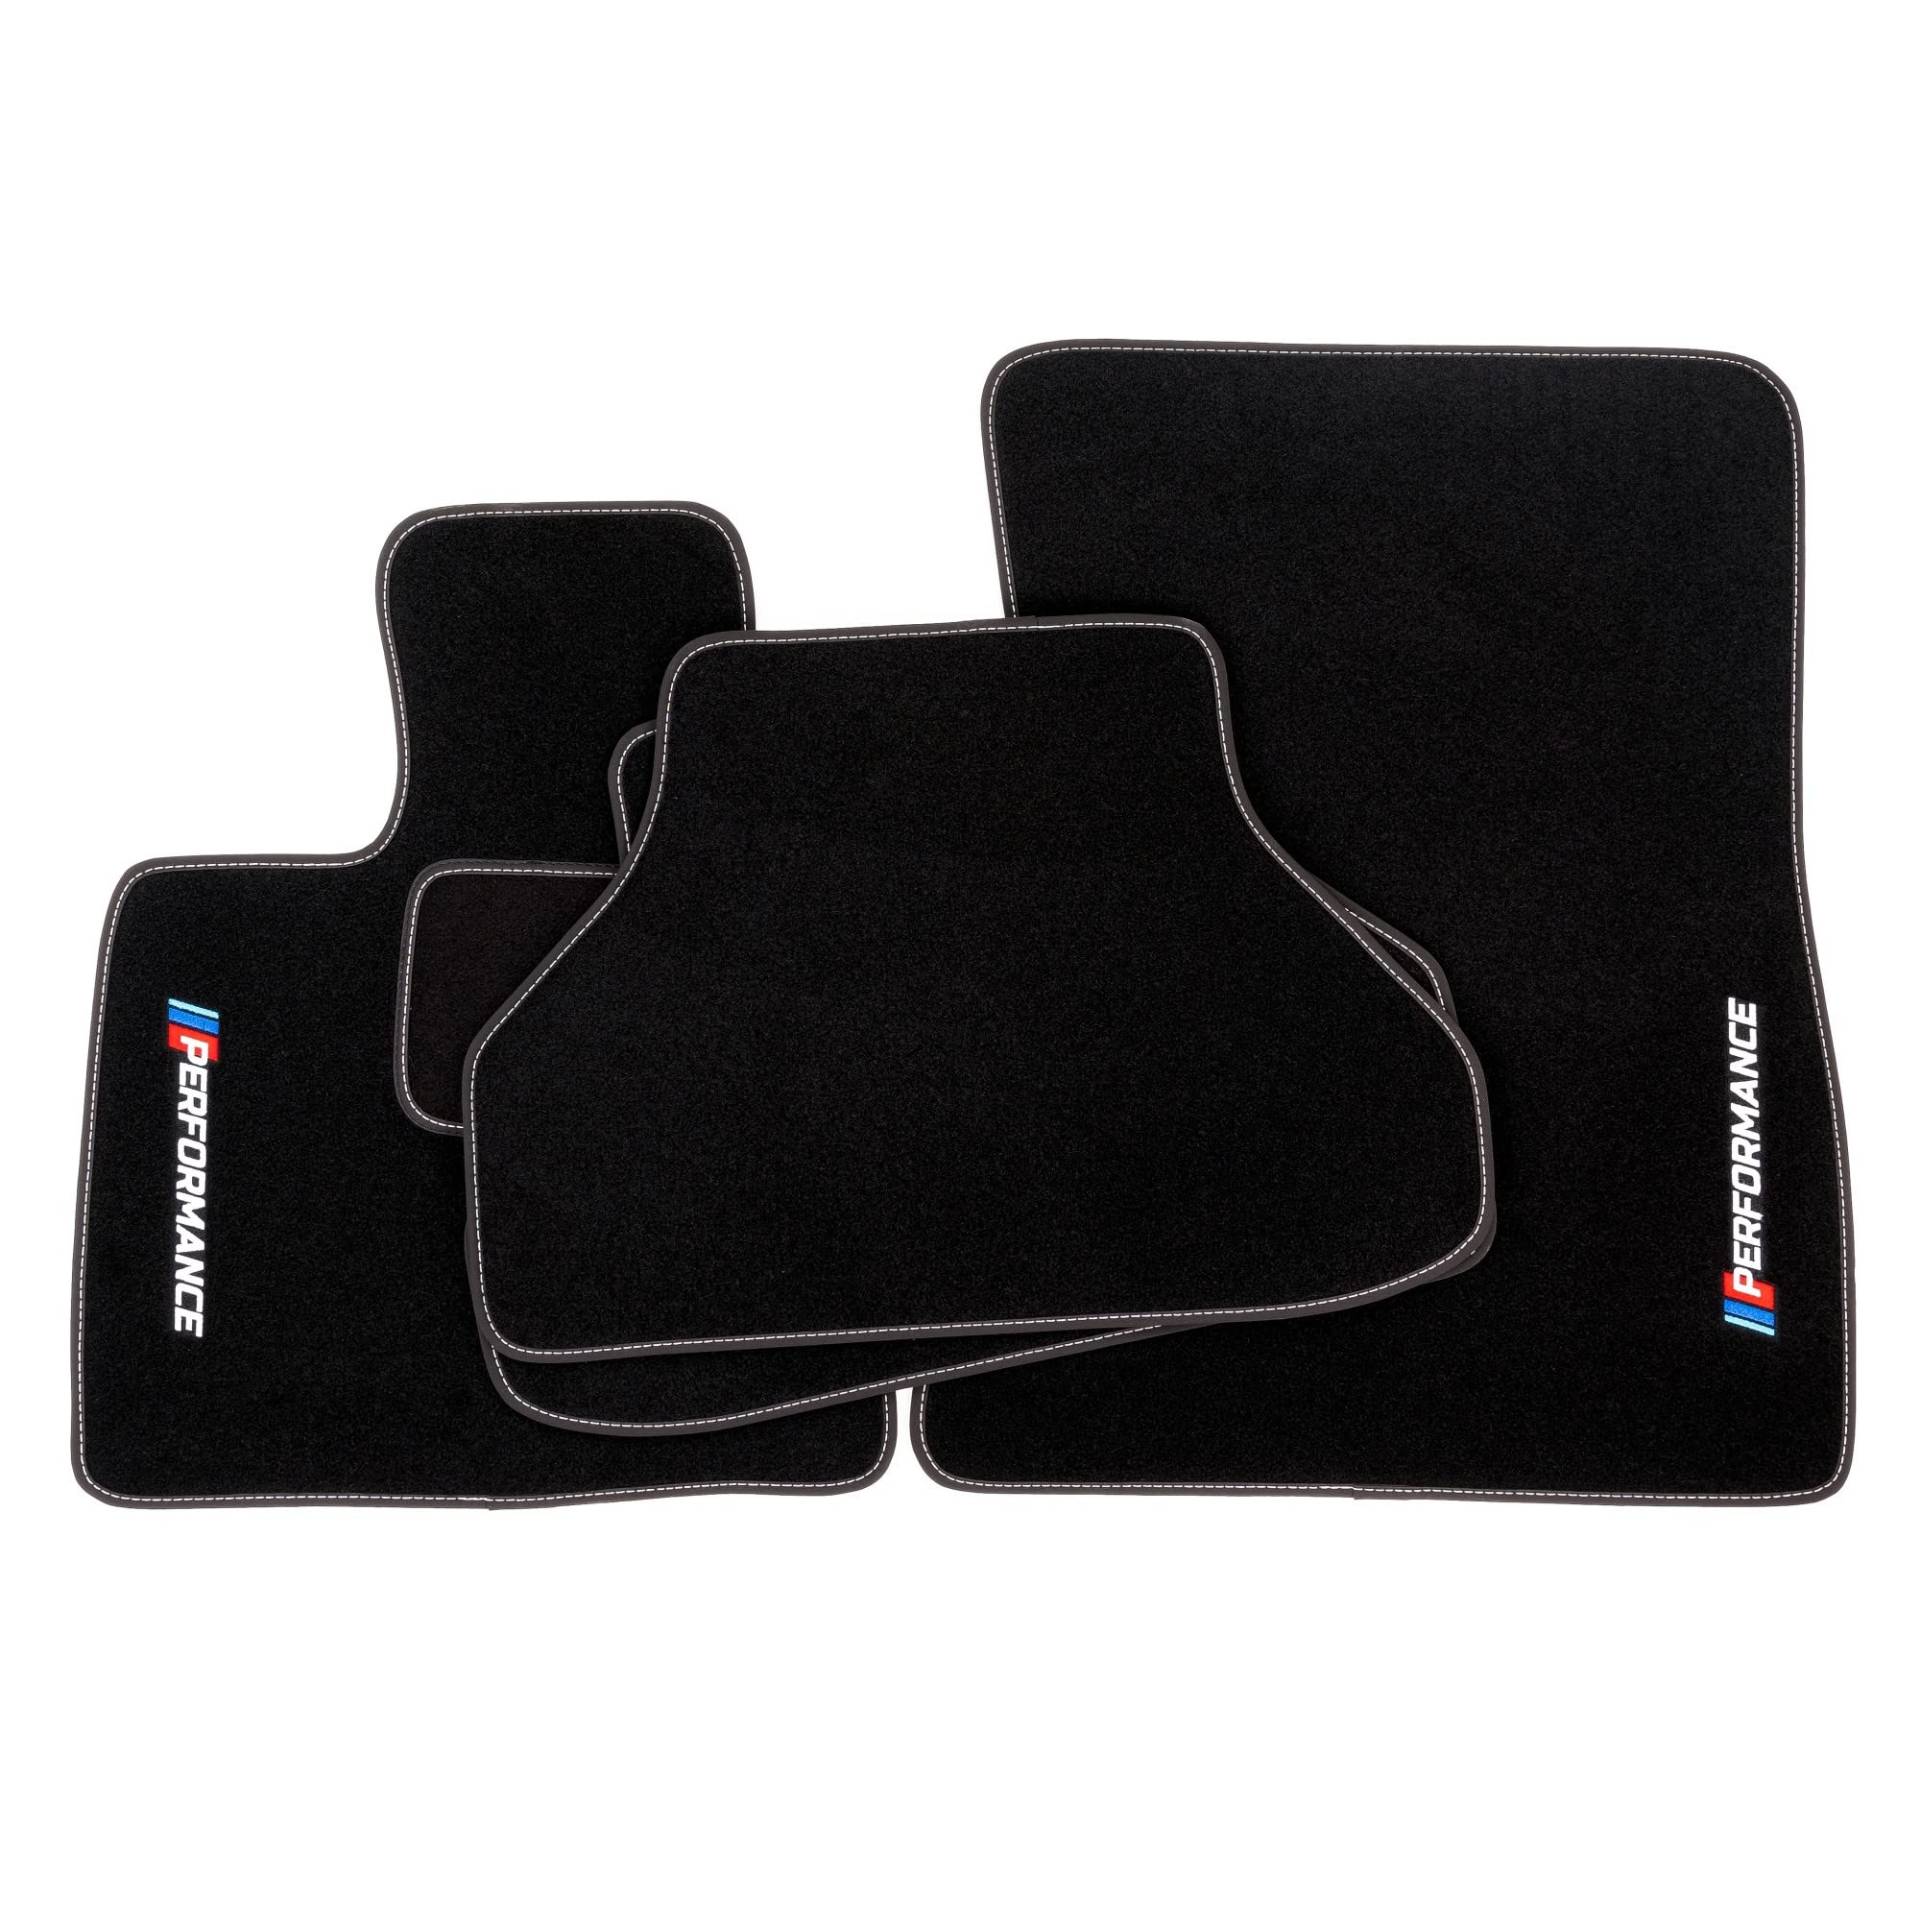 PERFORMANCE Personalisierte Velours-Fußmatten für BMW X6 E71 2007-2014 - Personalisierte, Matt, Weiß - halten Sie Ihr Auto sauber und komfortabel mit unseren Fußmatten von PERFORMANCE